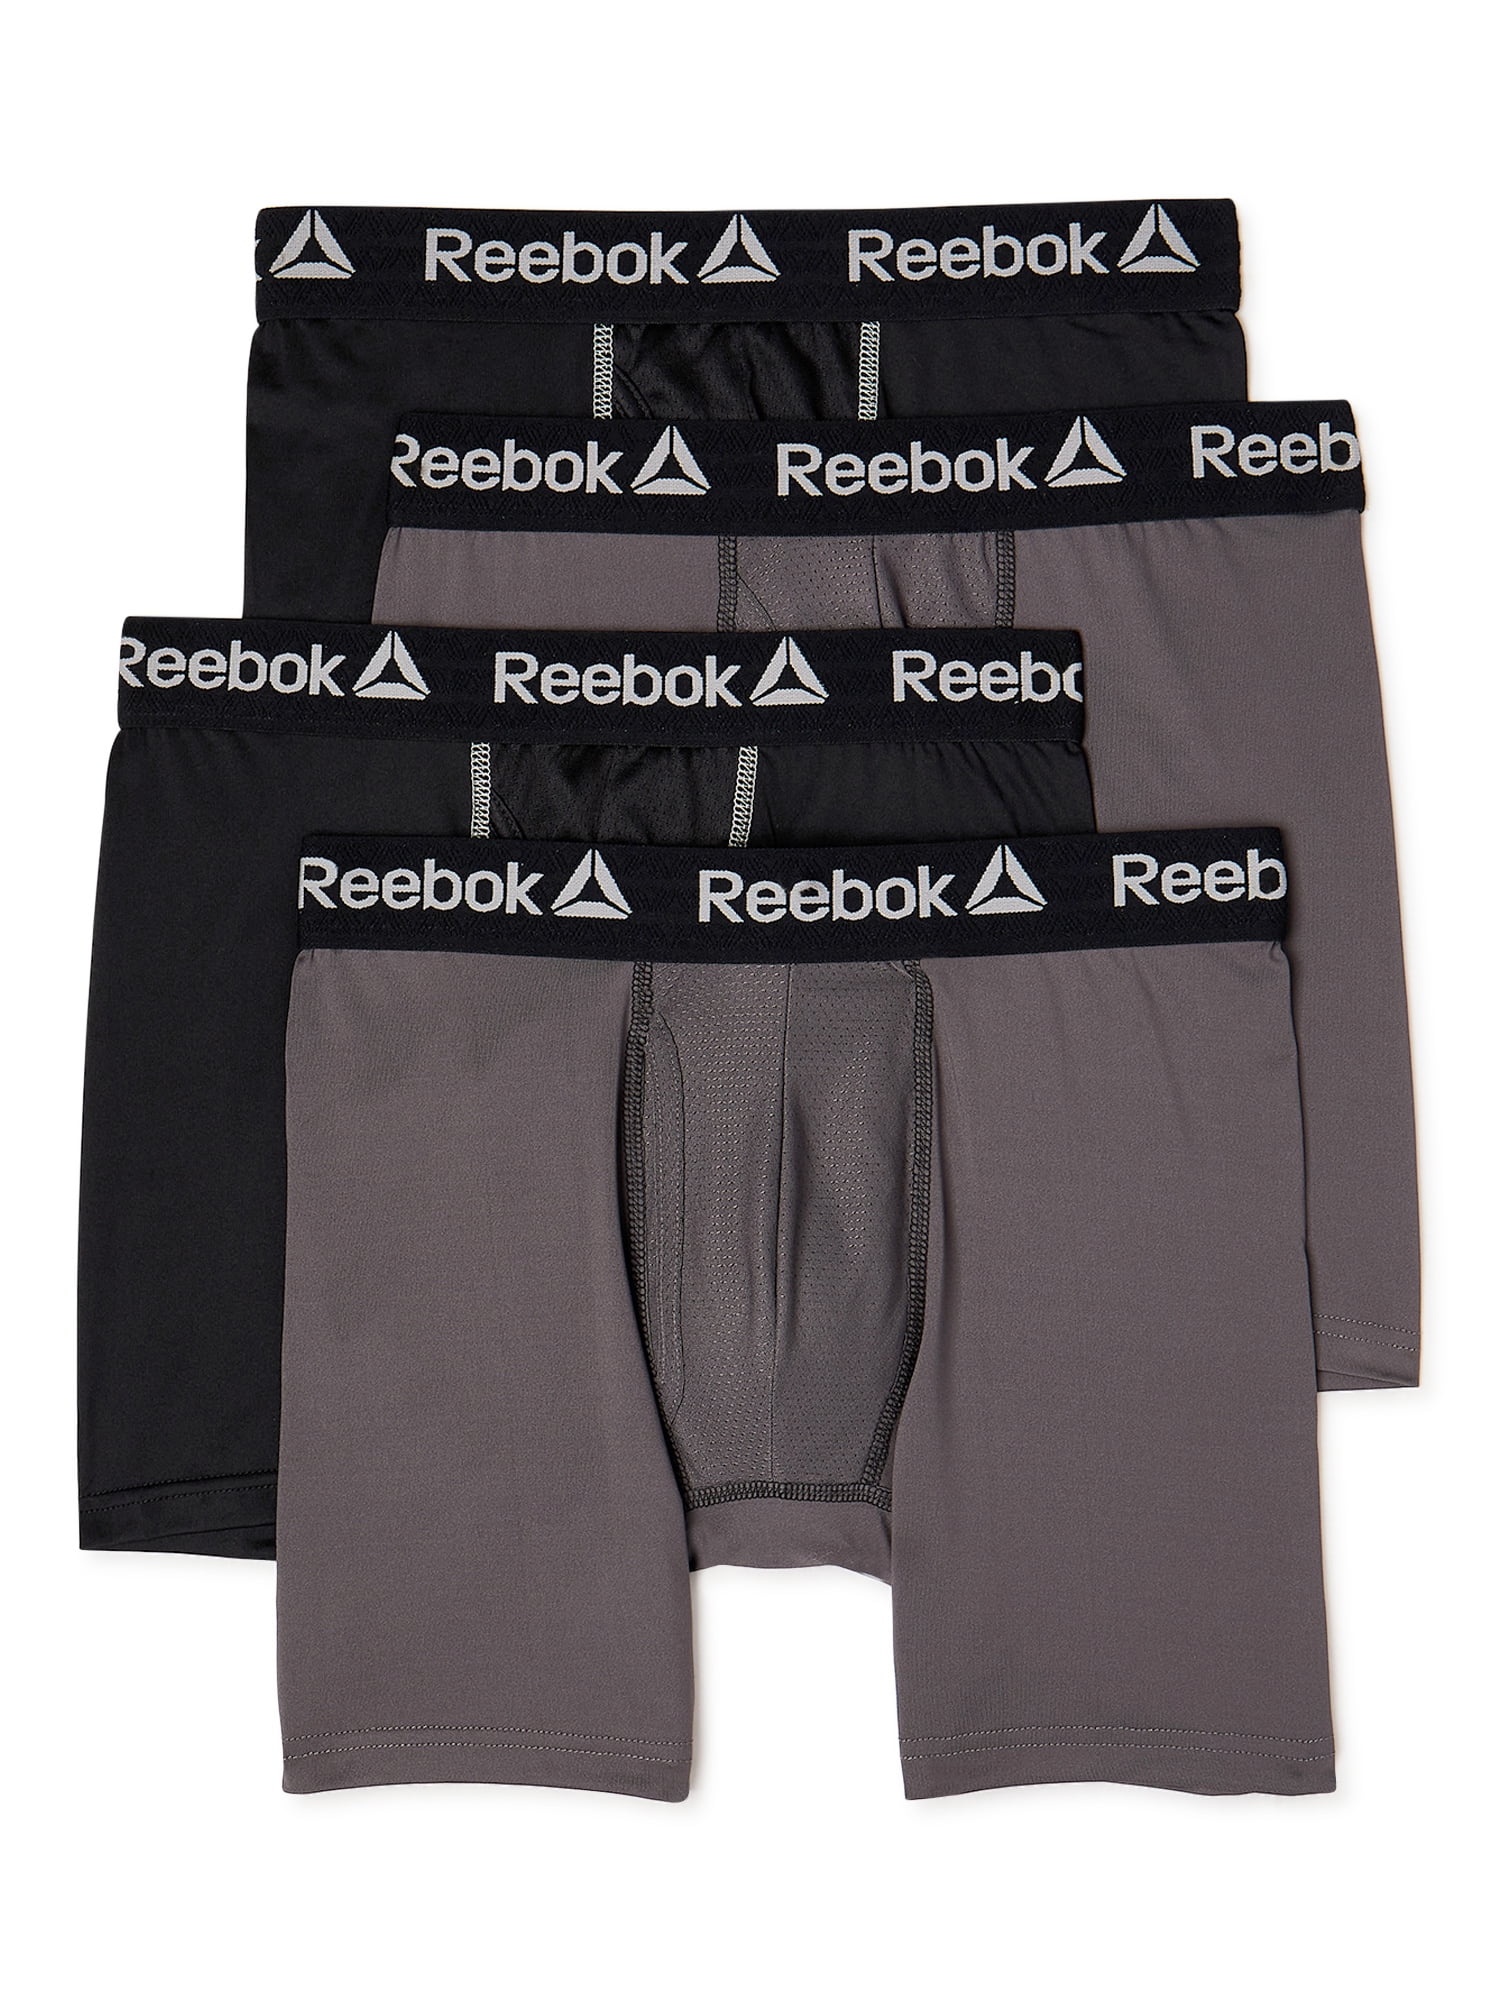 Reebok Men's Performance Regular Leg Boxer Briefs, 4 Pack - Walmart.com